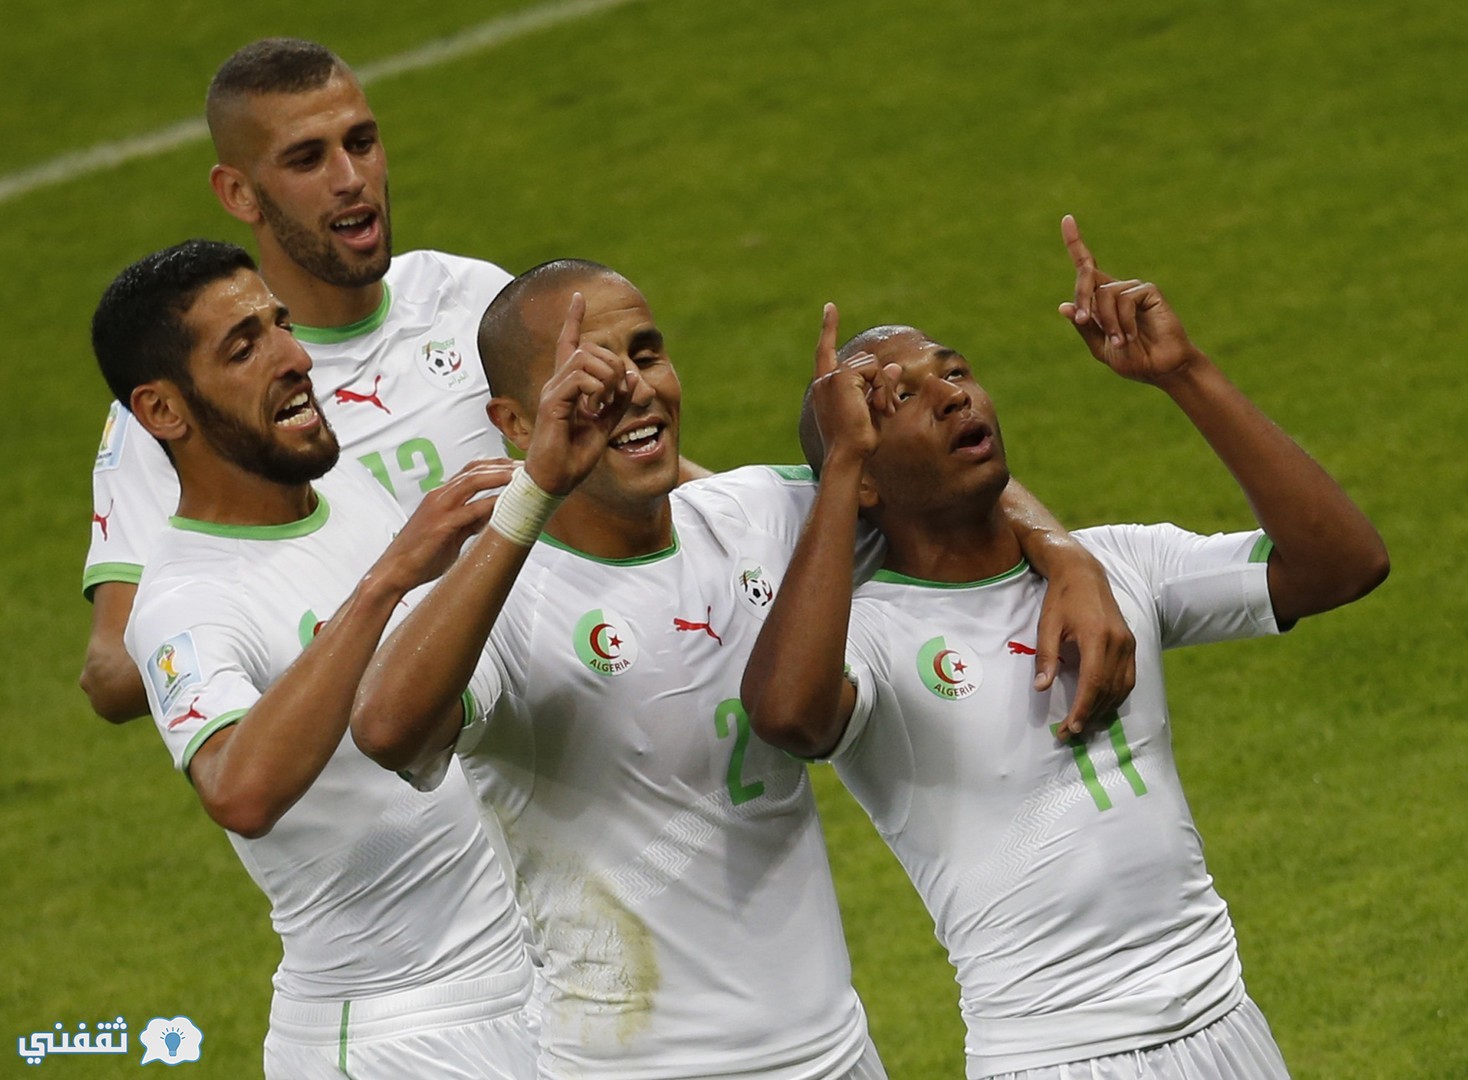 مباراة الجزائر وليسوتو اليوم والقنوات الناقلة مجانا للمباراة فى تصفيات كأس الامم الافريقية